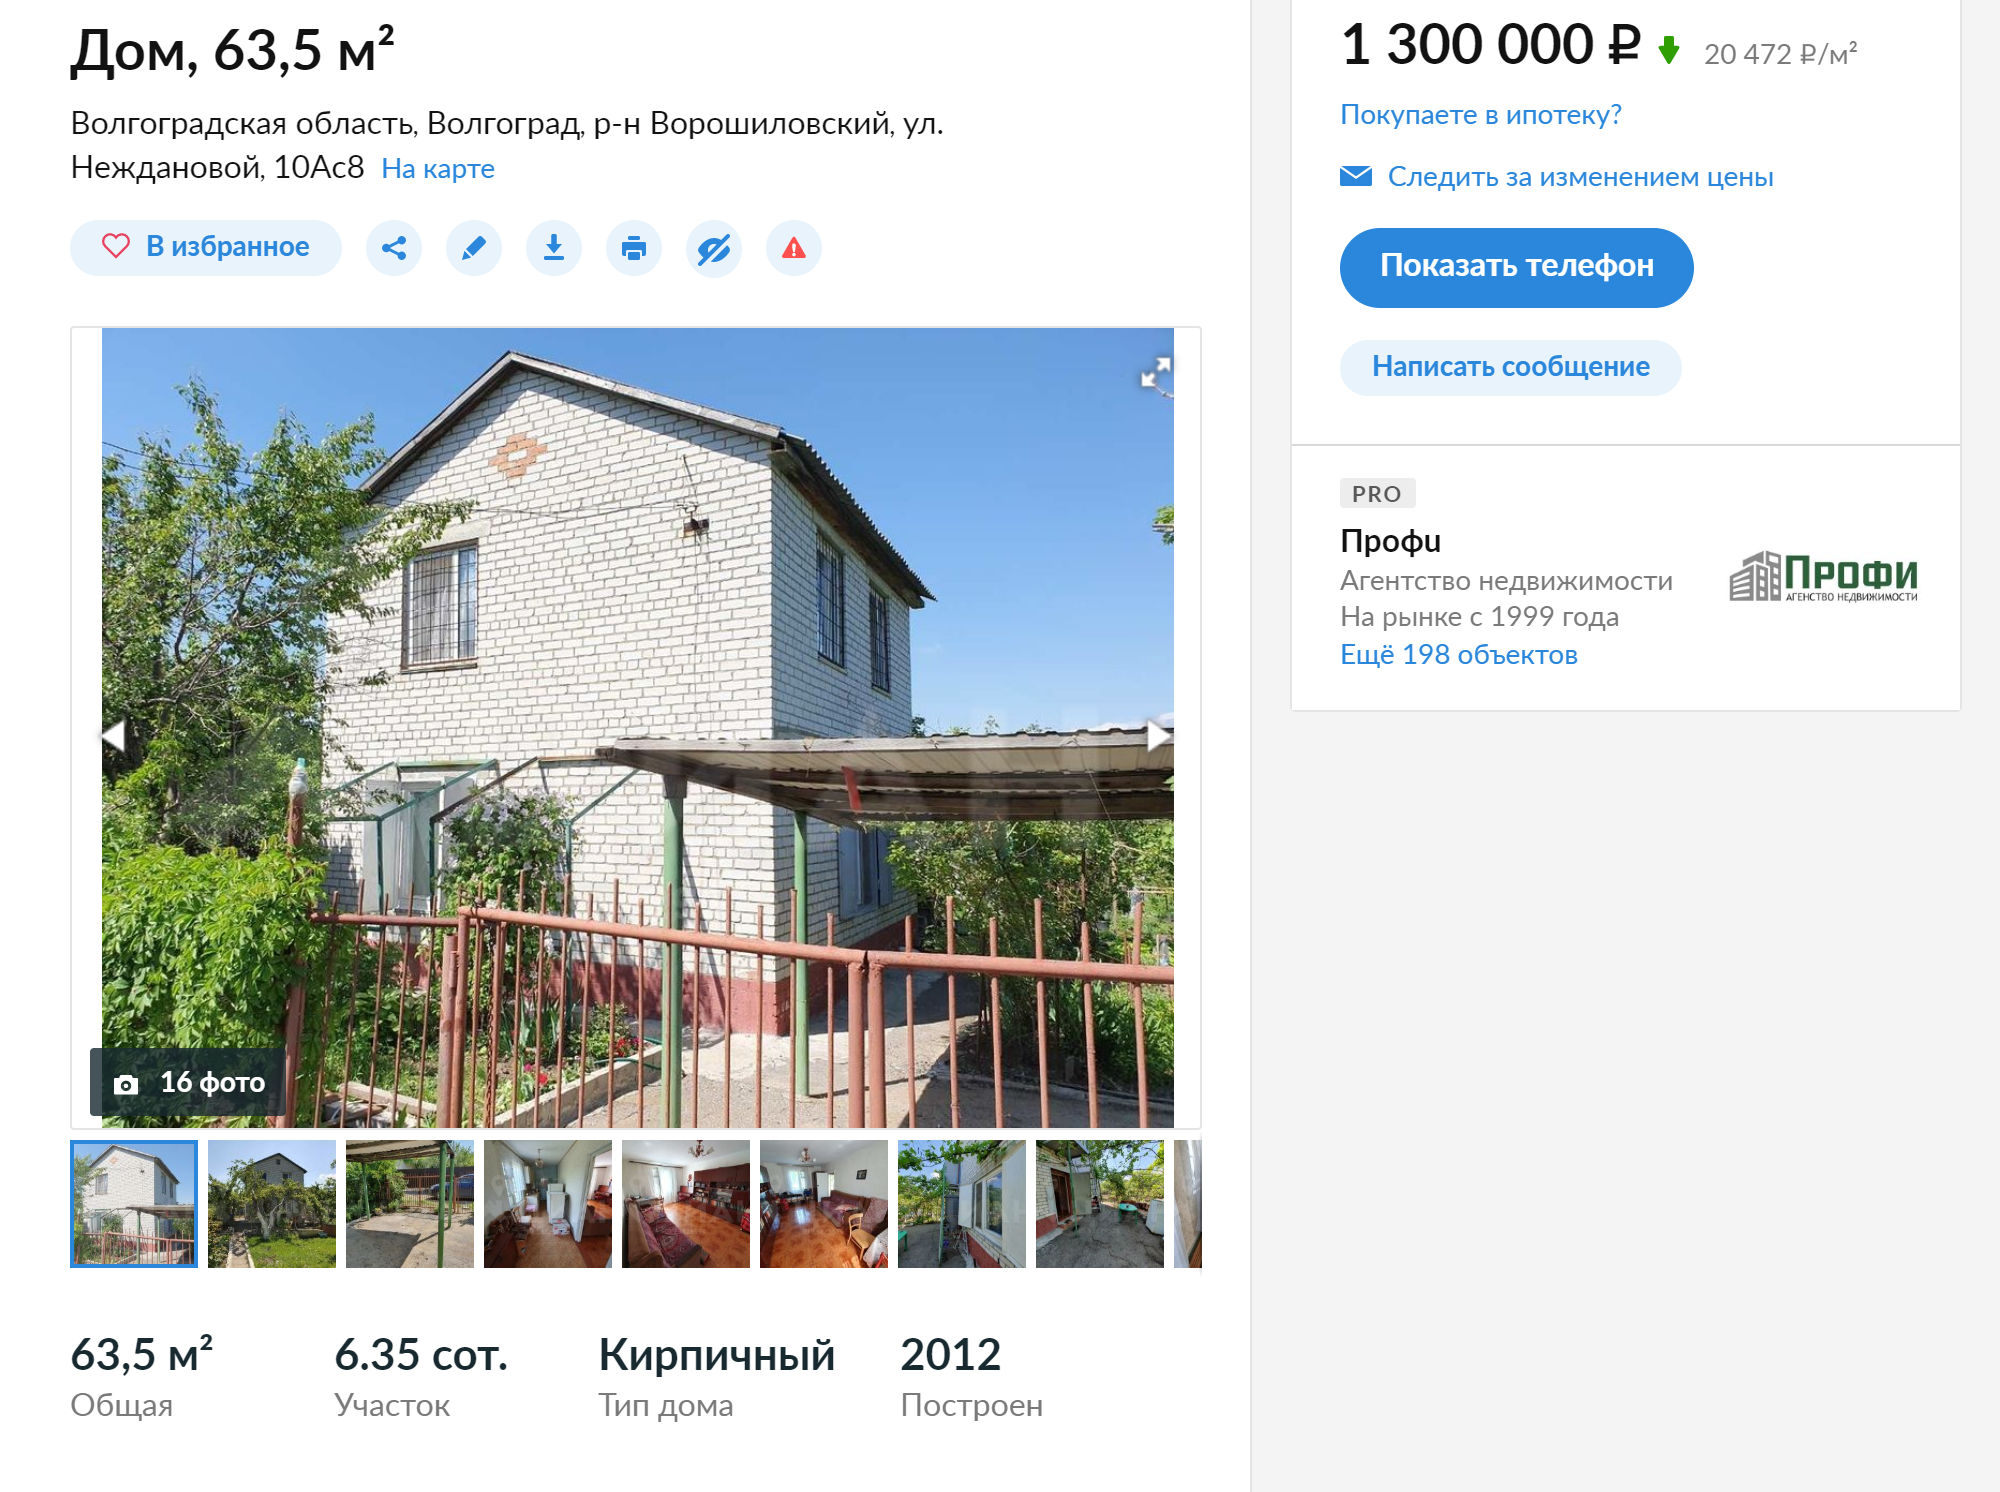 Средняя цена за дом в черте города — 1,3 млн рублей. За эти деньги можно купить жилье в хорошем состоянии